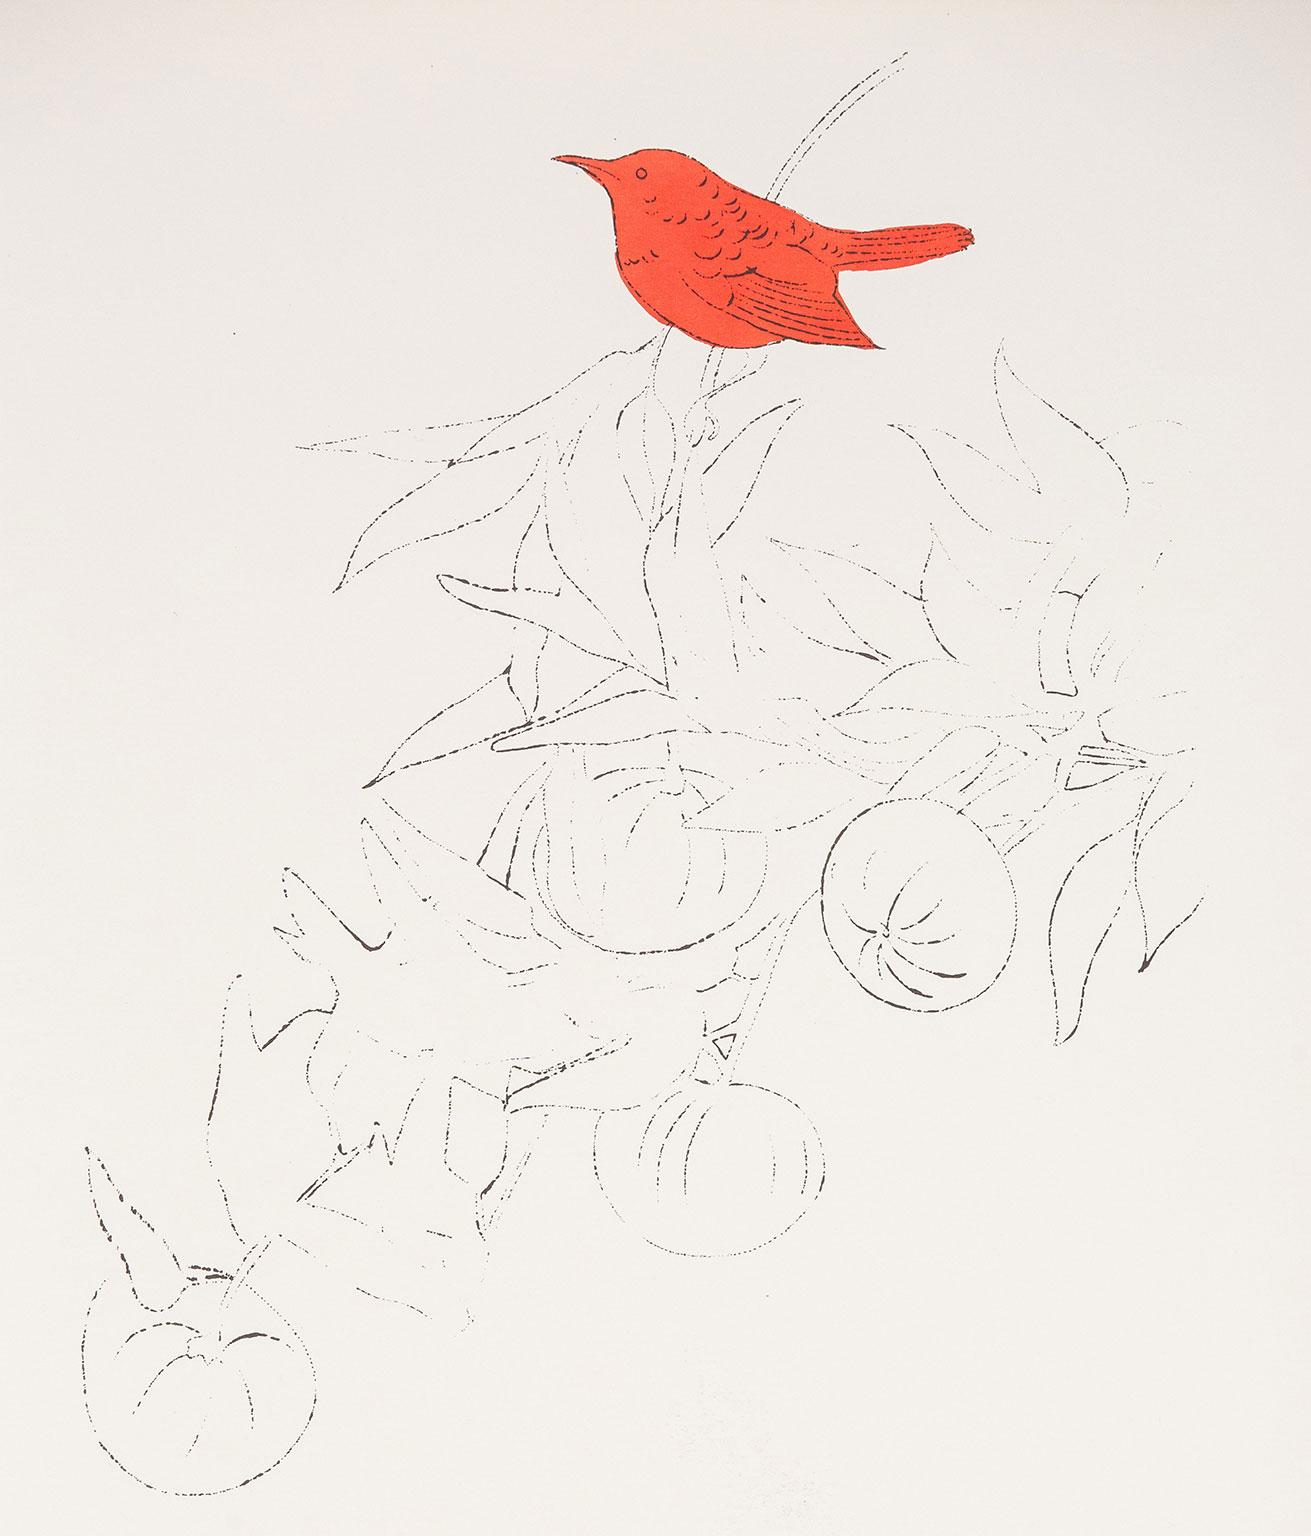 Oiseau sur une branche de fruits, lithographie offset colorée à la main à l'aquarelle - Pop Art Print par Andy Warhol